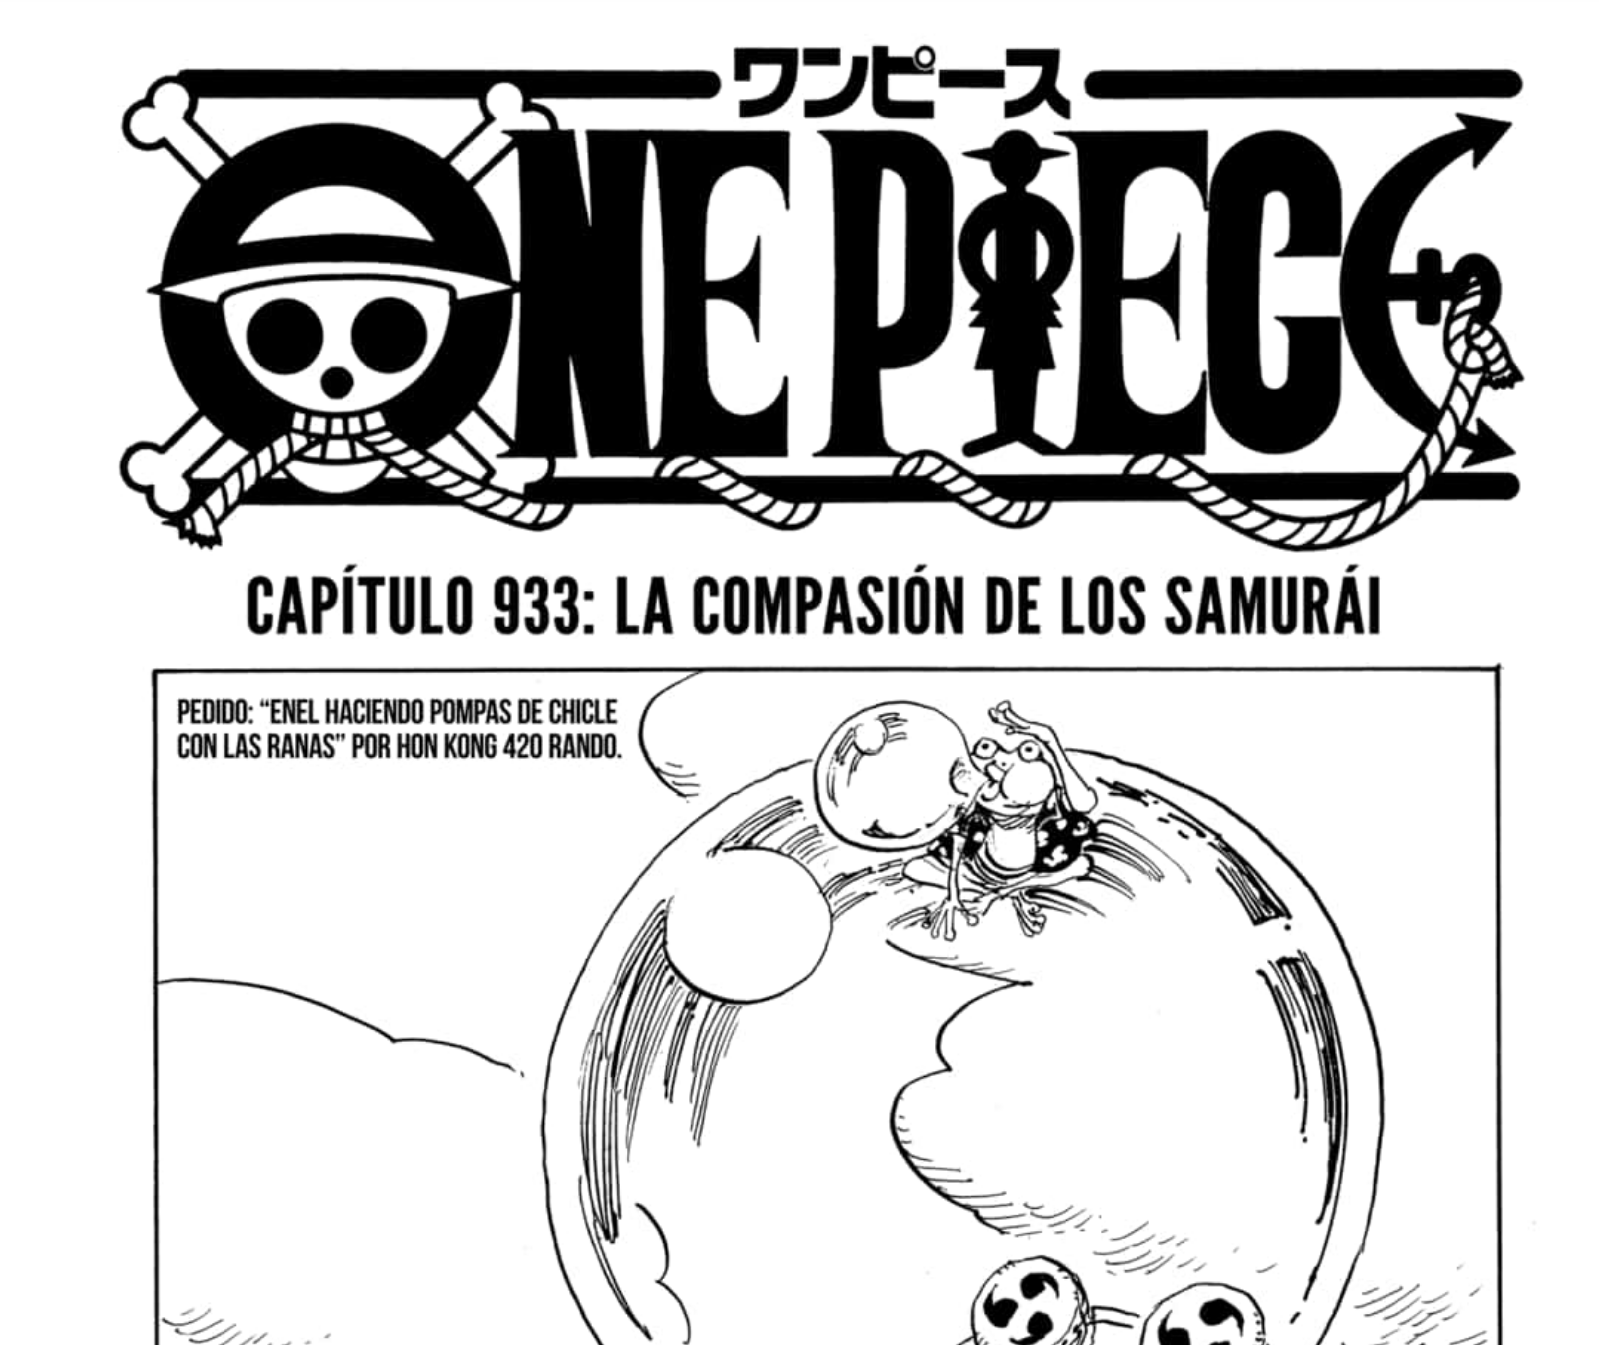 Importante Los Capitulos Semanales Del Manga De One Piece Llegan De Forma Oficial Y Gratuita En Castellano Foro De One Piece Pirateking